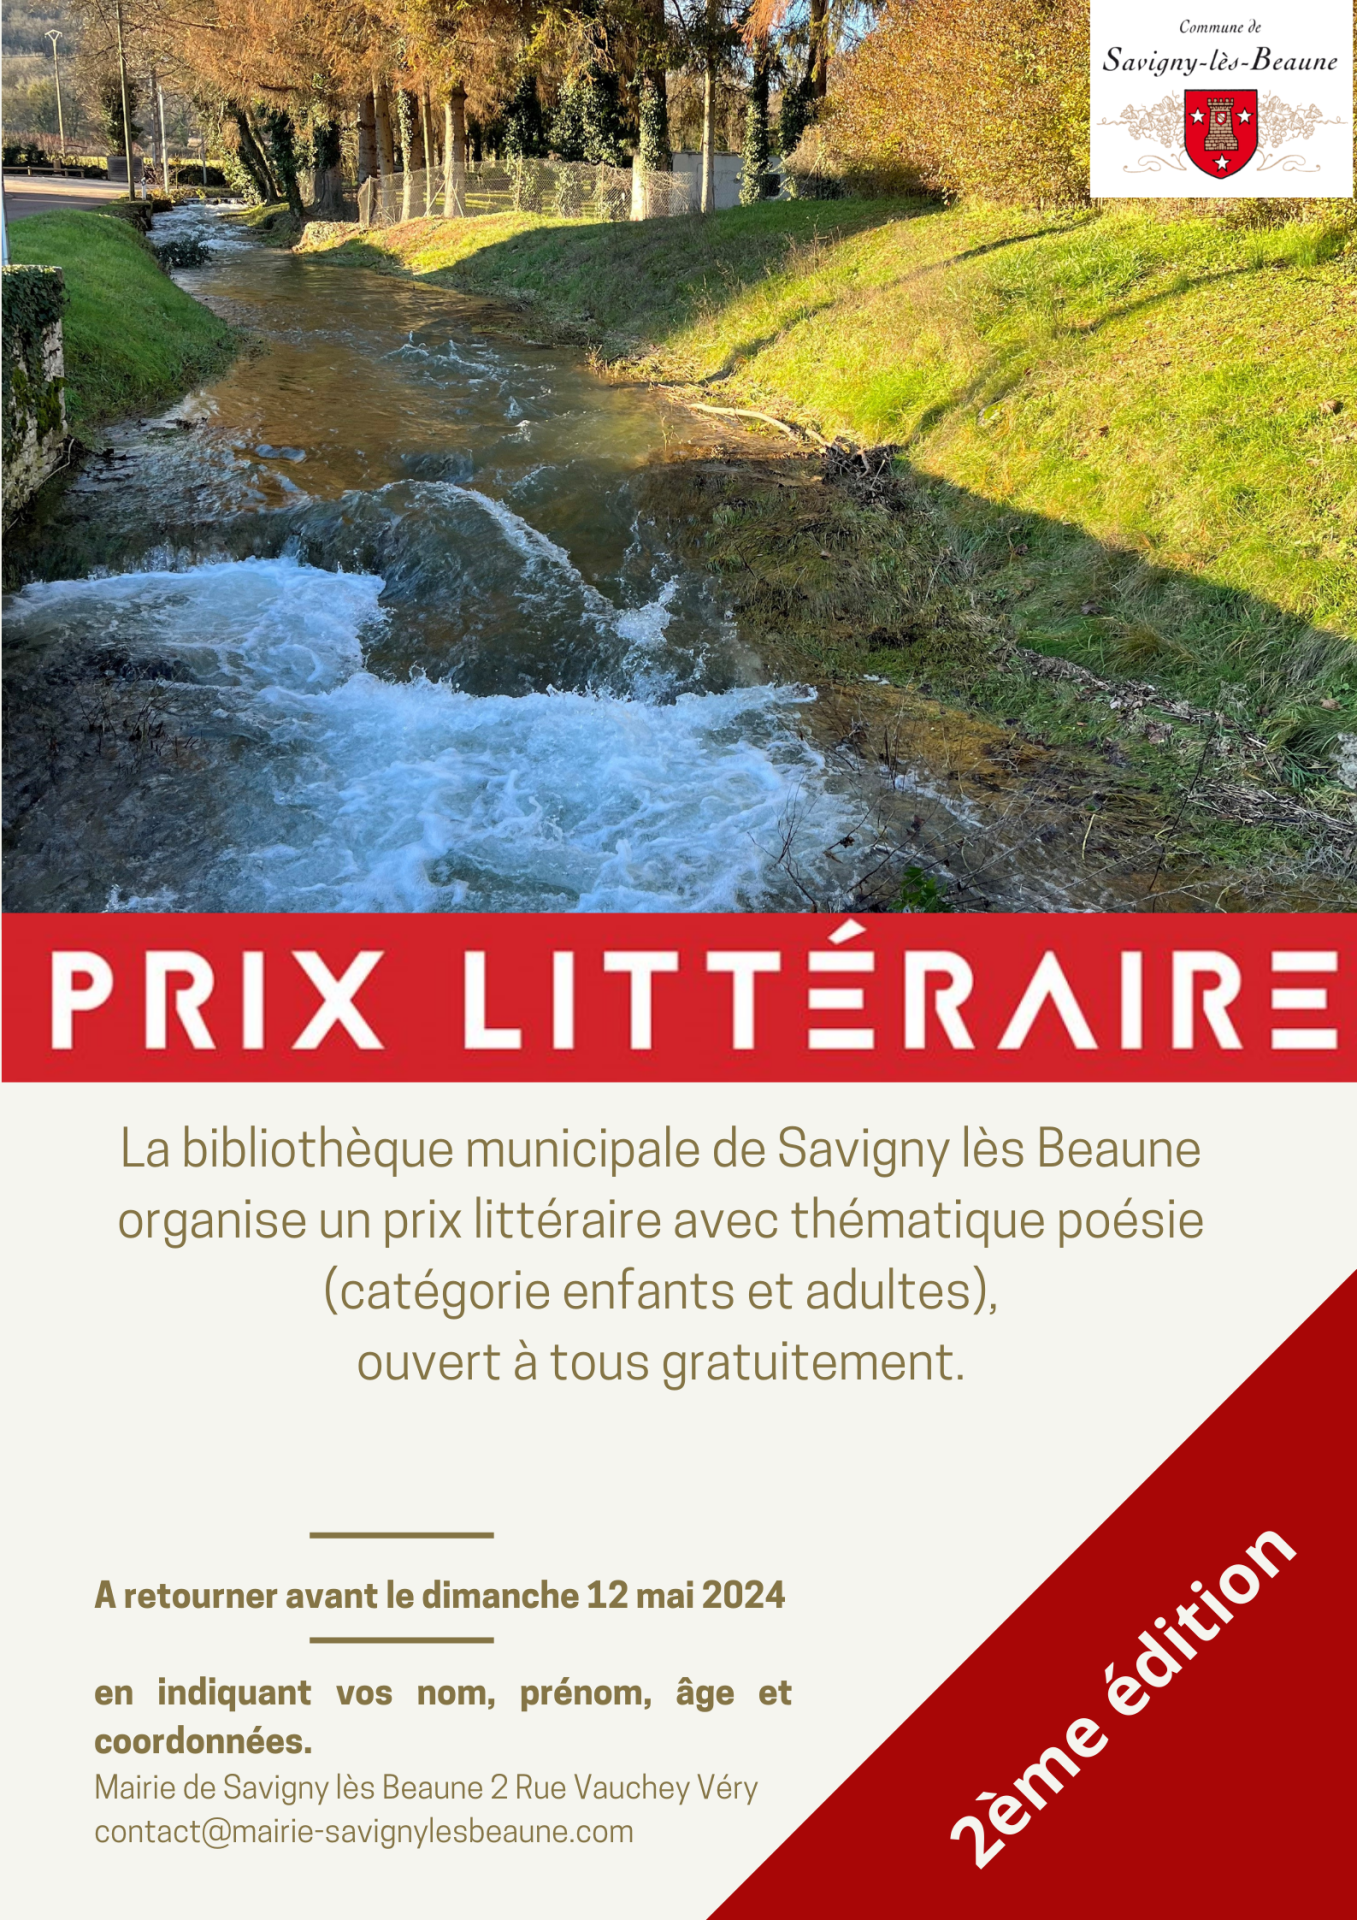 2ème édition du prix littéraire à Savigny